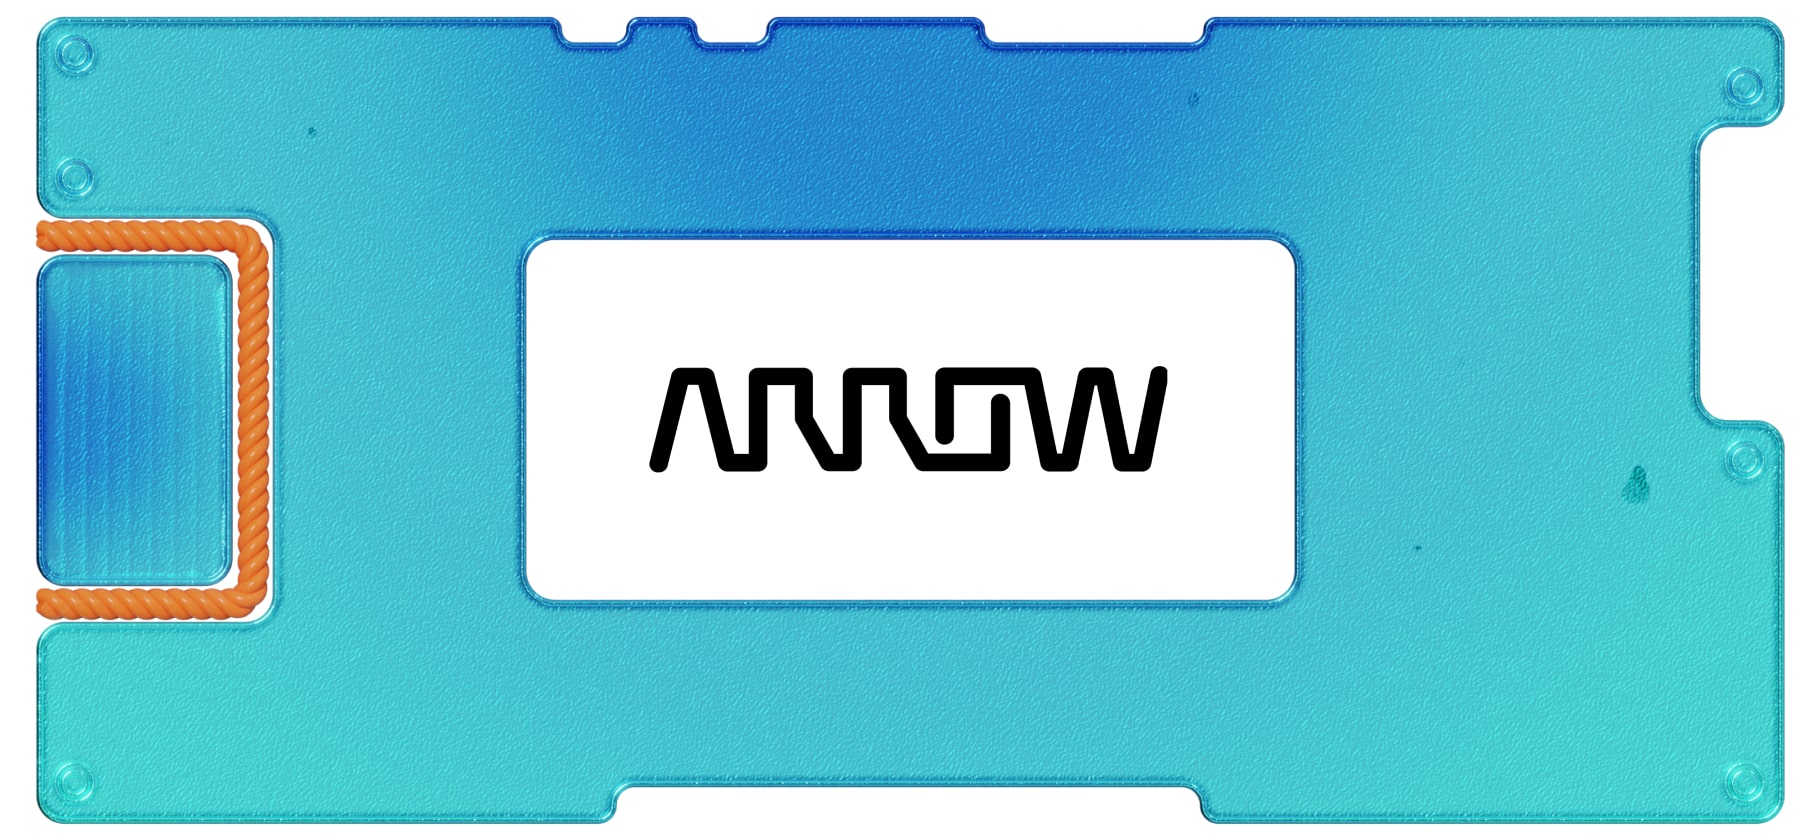 Обзор Arrow Electronics: полупроводниковые посредники